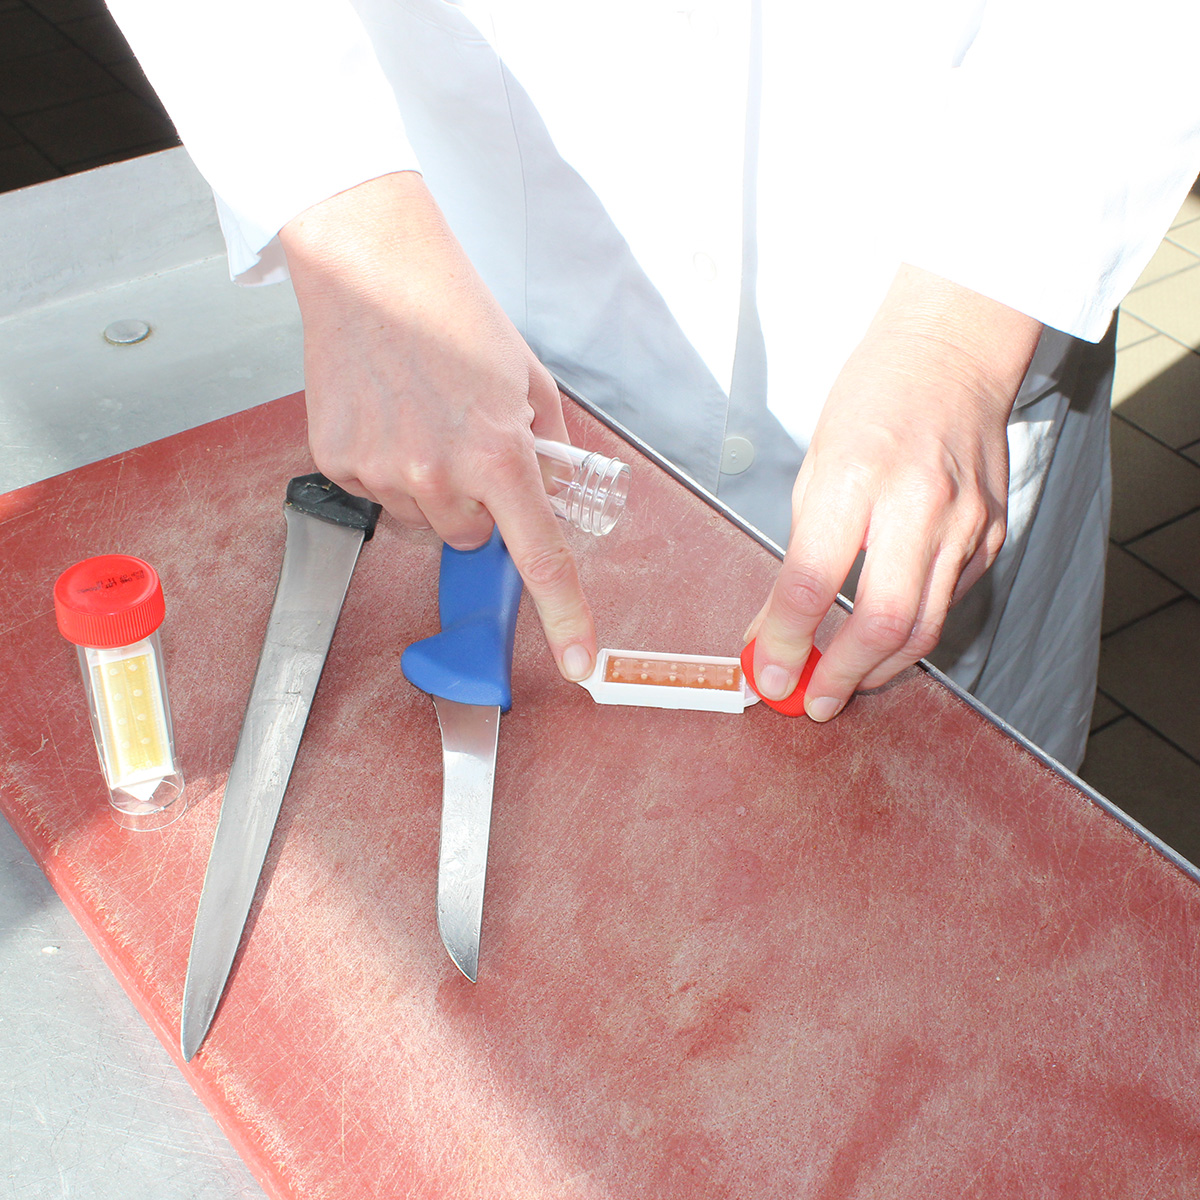 Kontrolle der Lebensmittelsicherheit in einer Fleischerei durch einen mikrobiologischen Test.